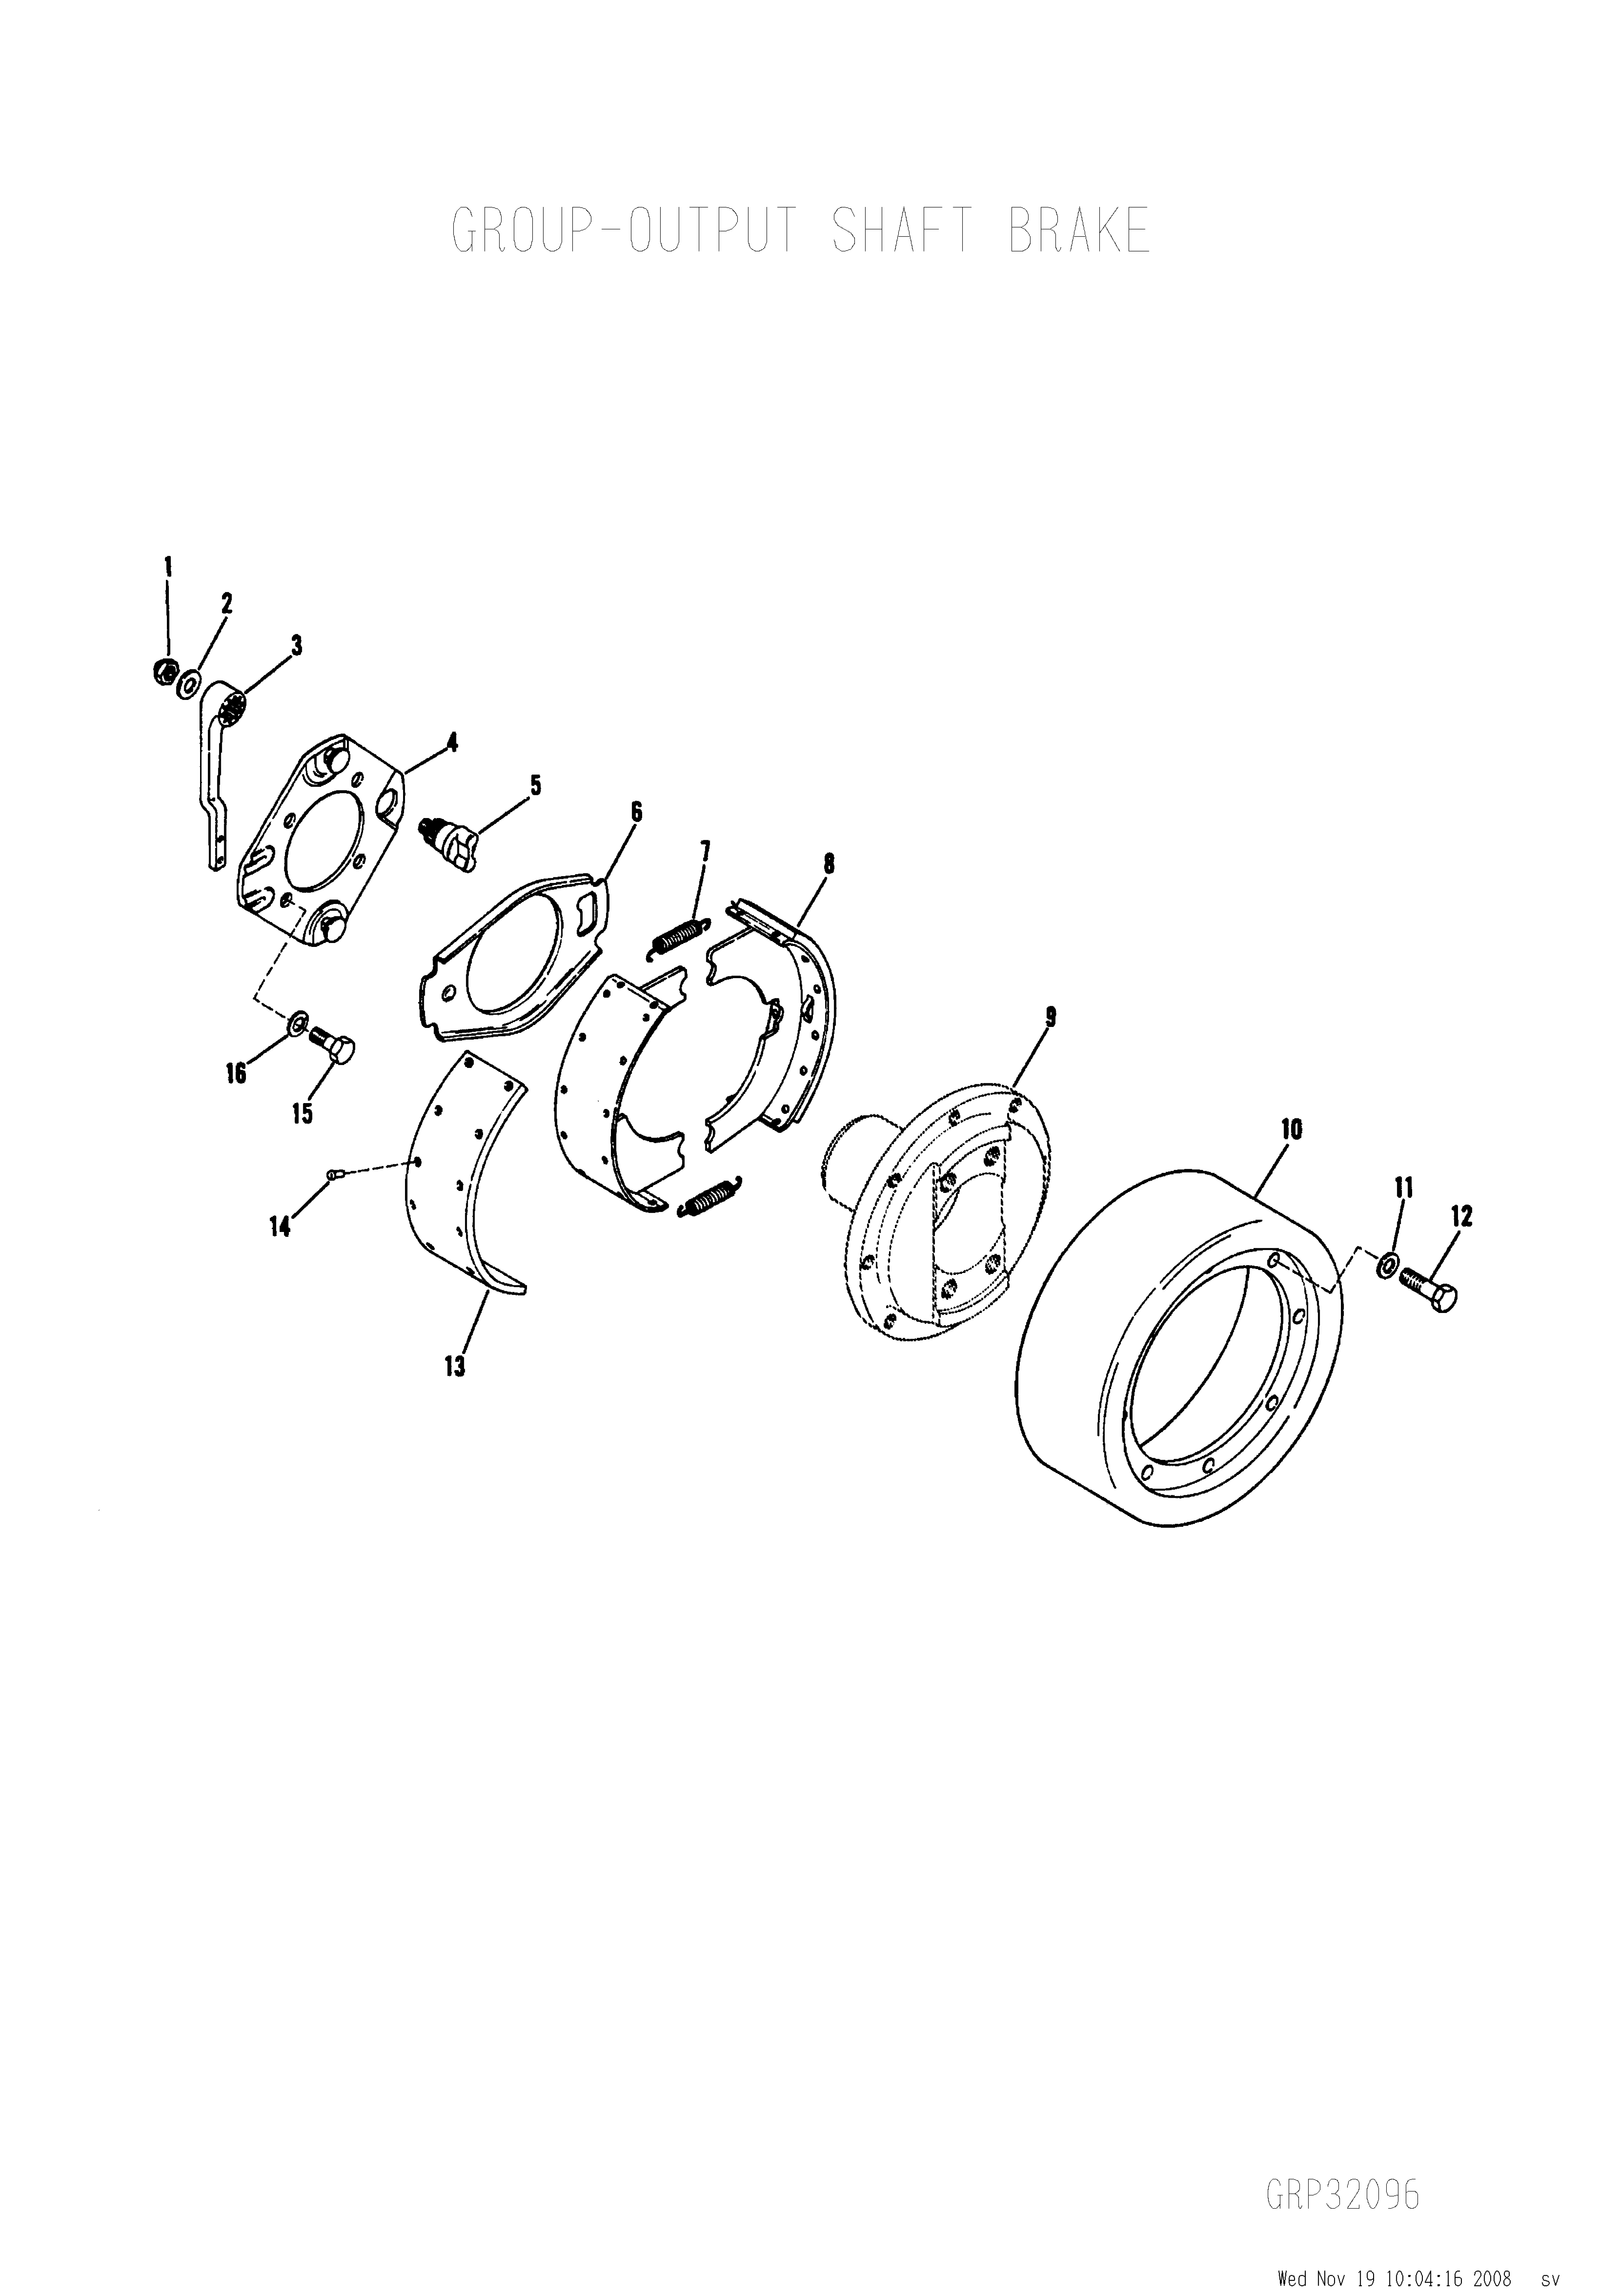 drawing for SANDVIK 0301861 - LOCK WASHER (figure 3)